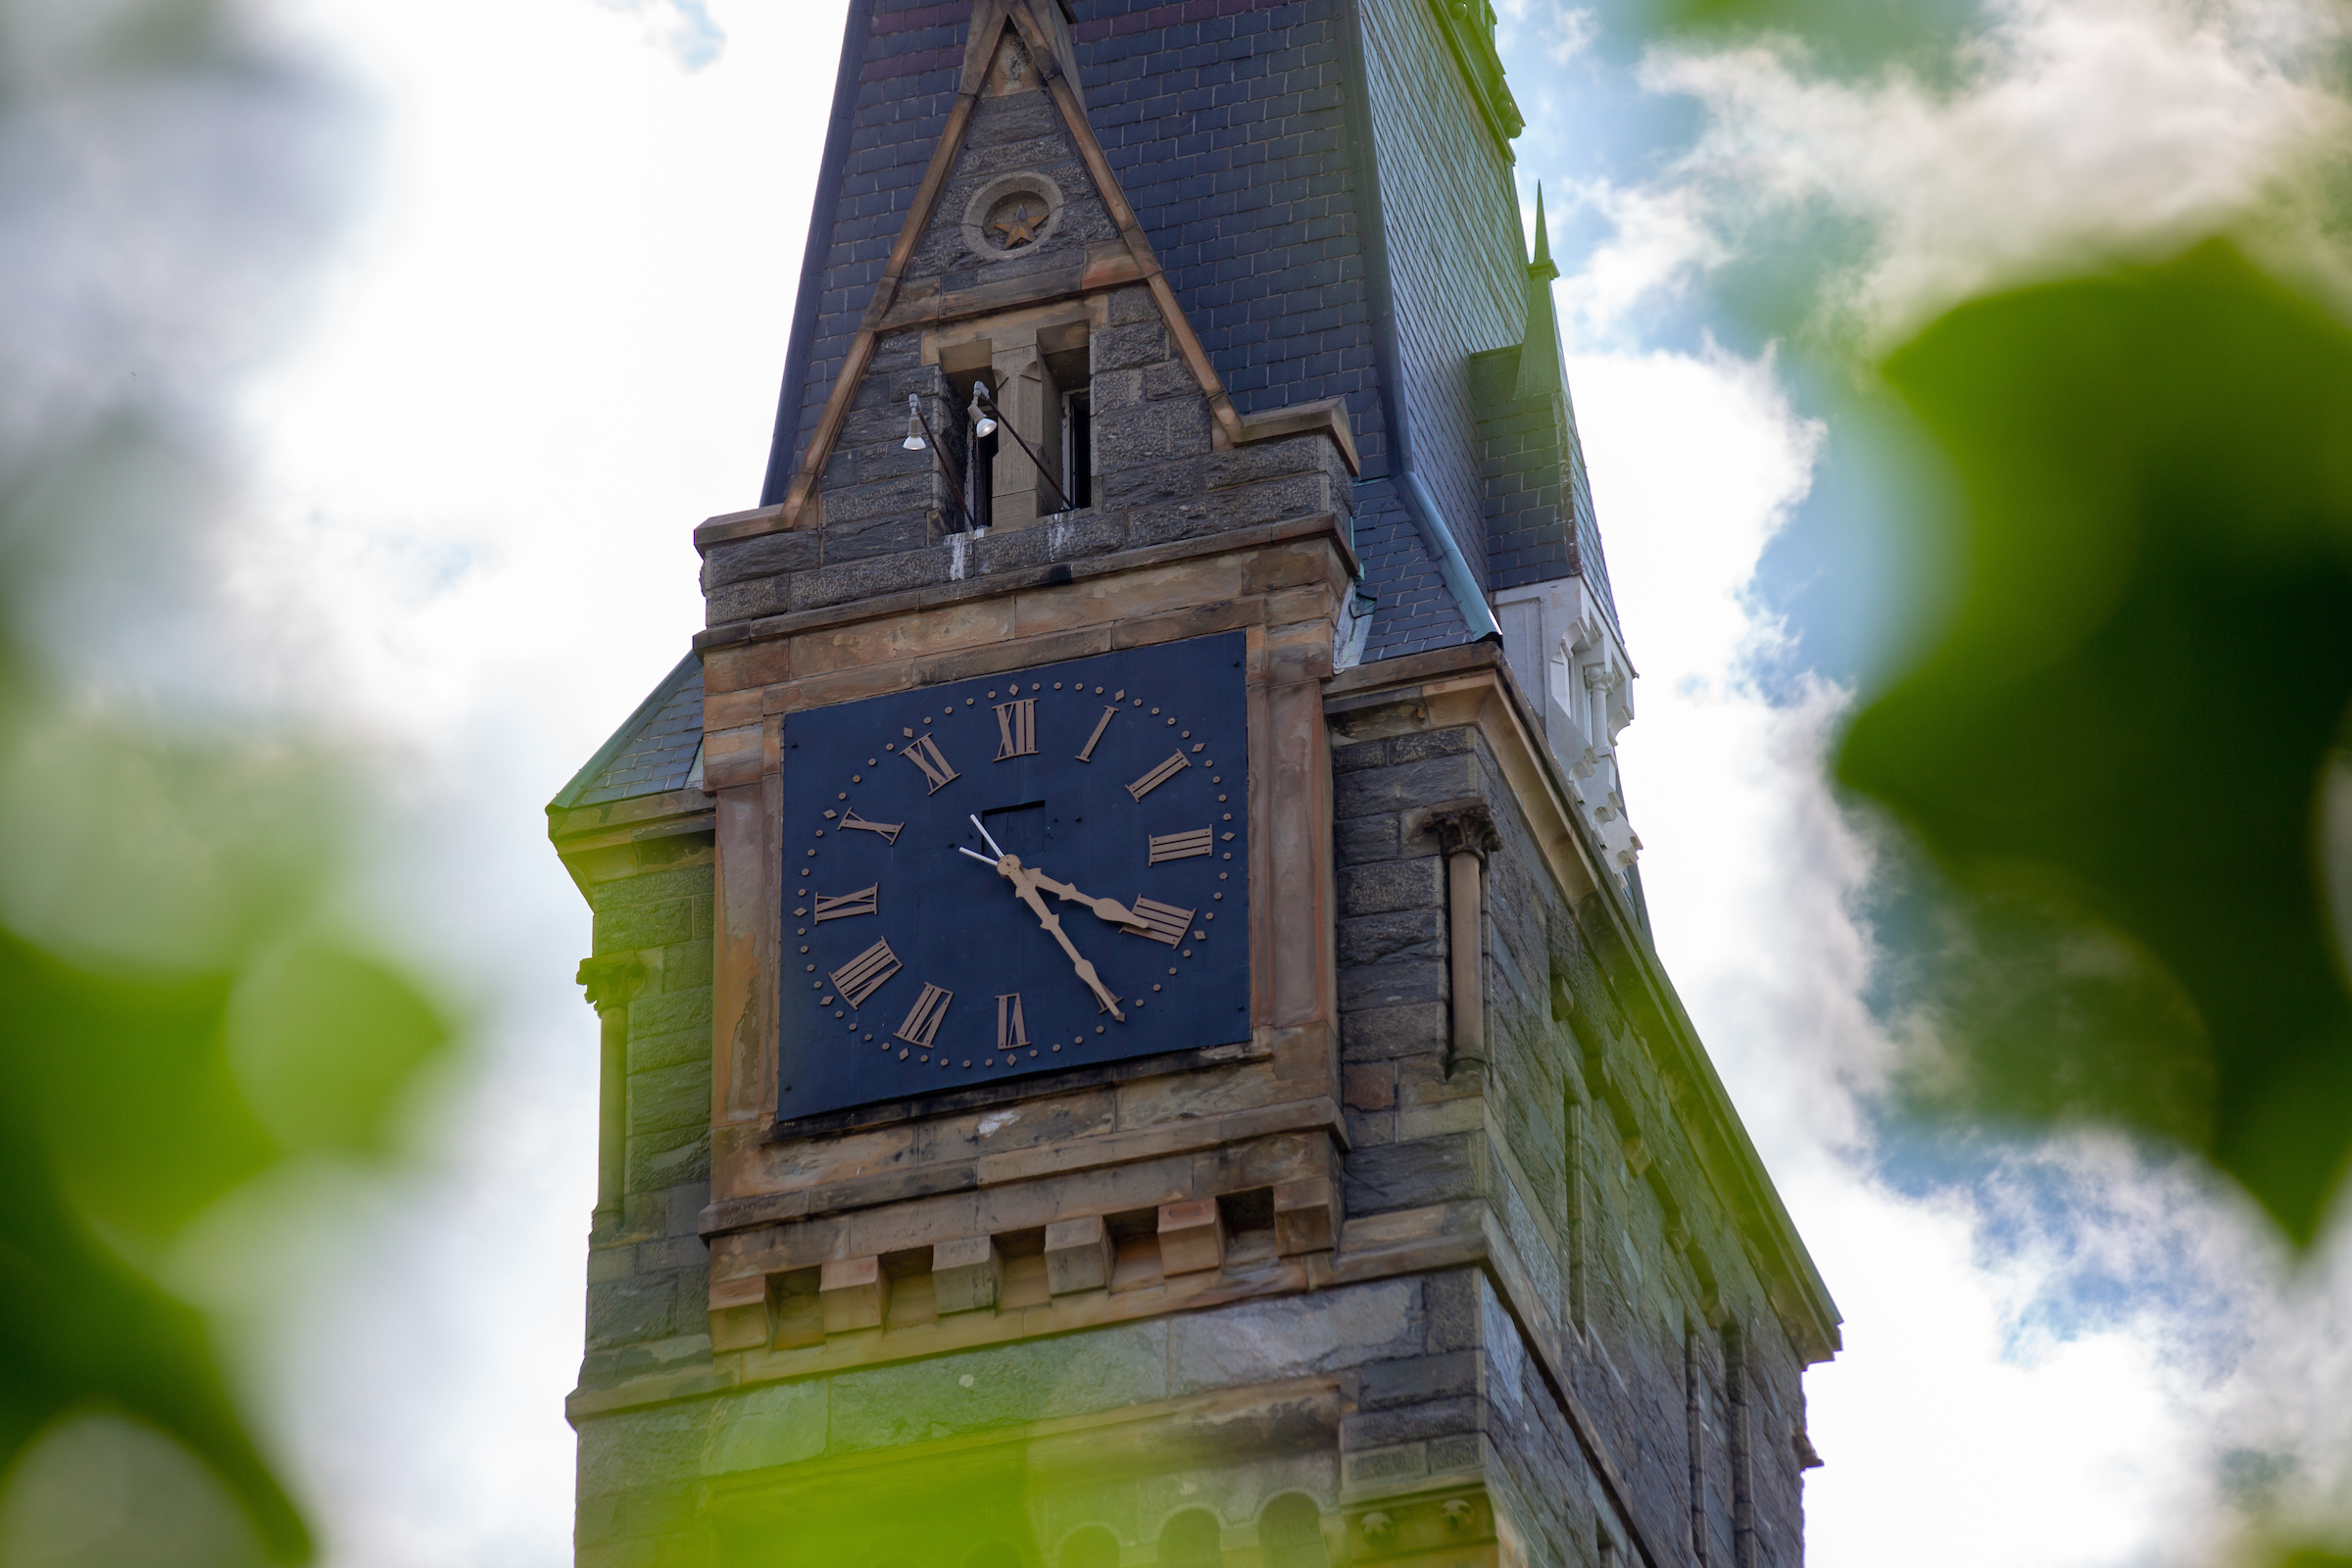 Healy Hall clocktower